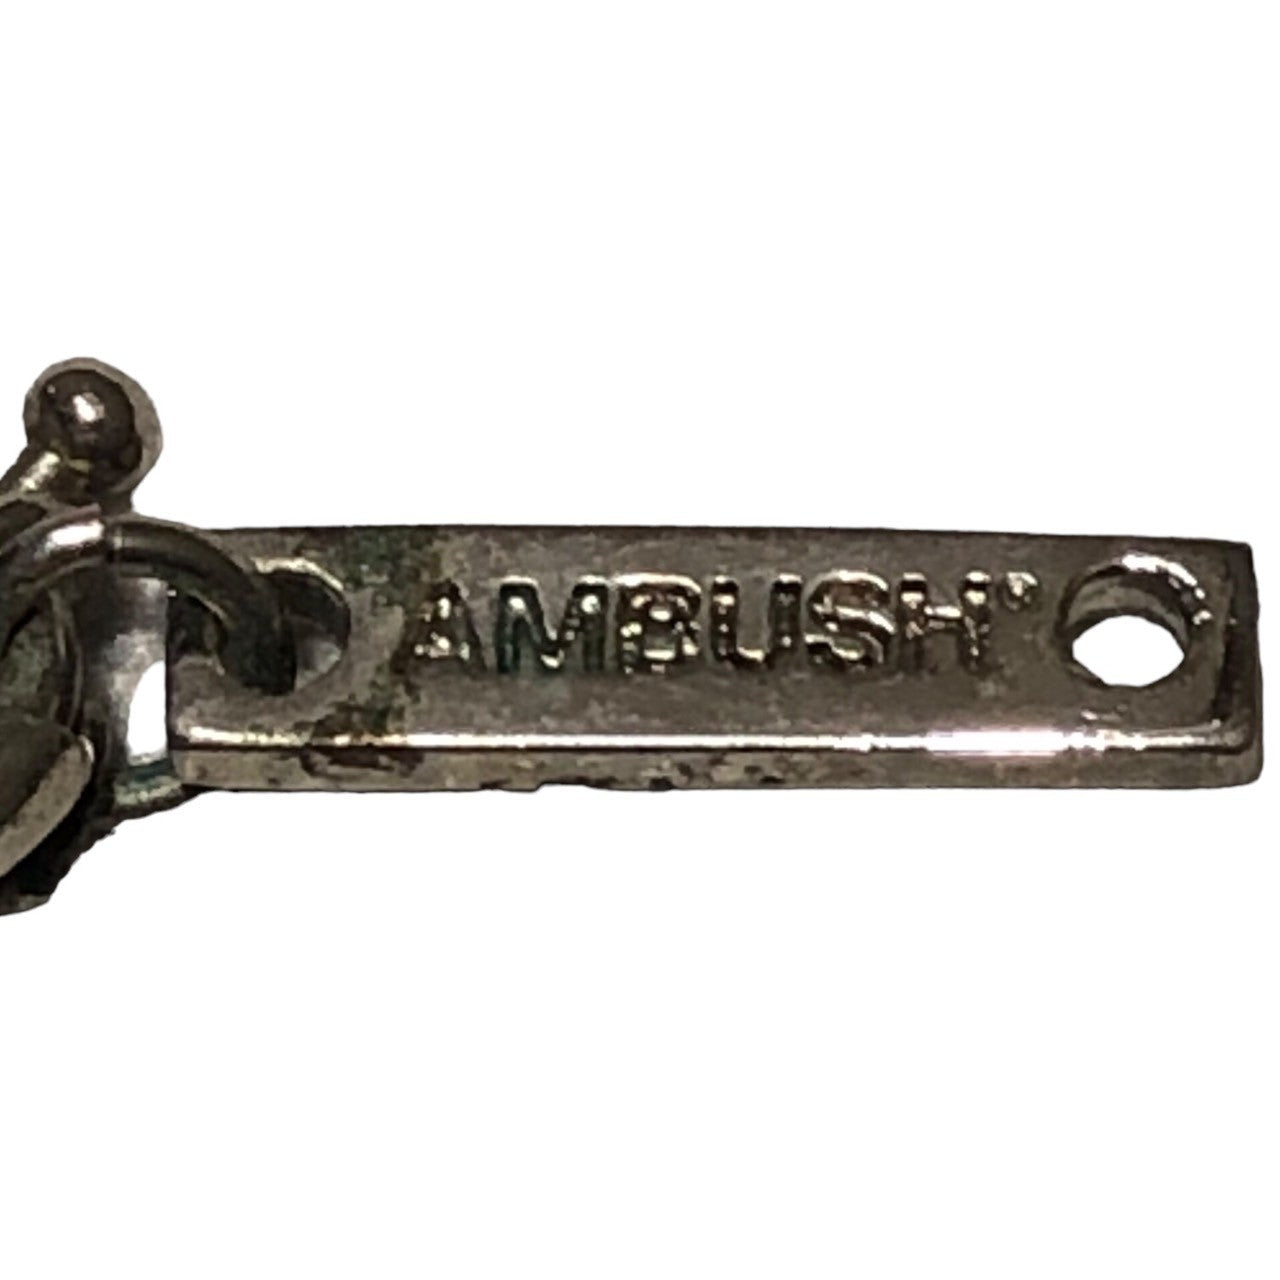 AMBUSH(アンブッシュ) lighter case ライター ケース シルバー ネックレス